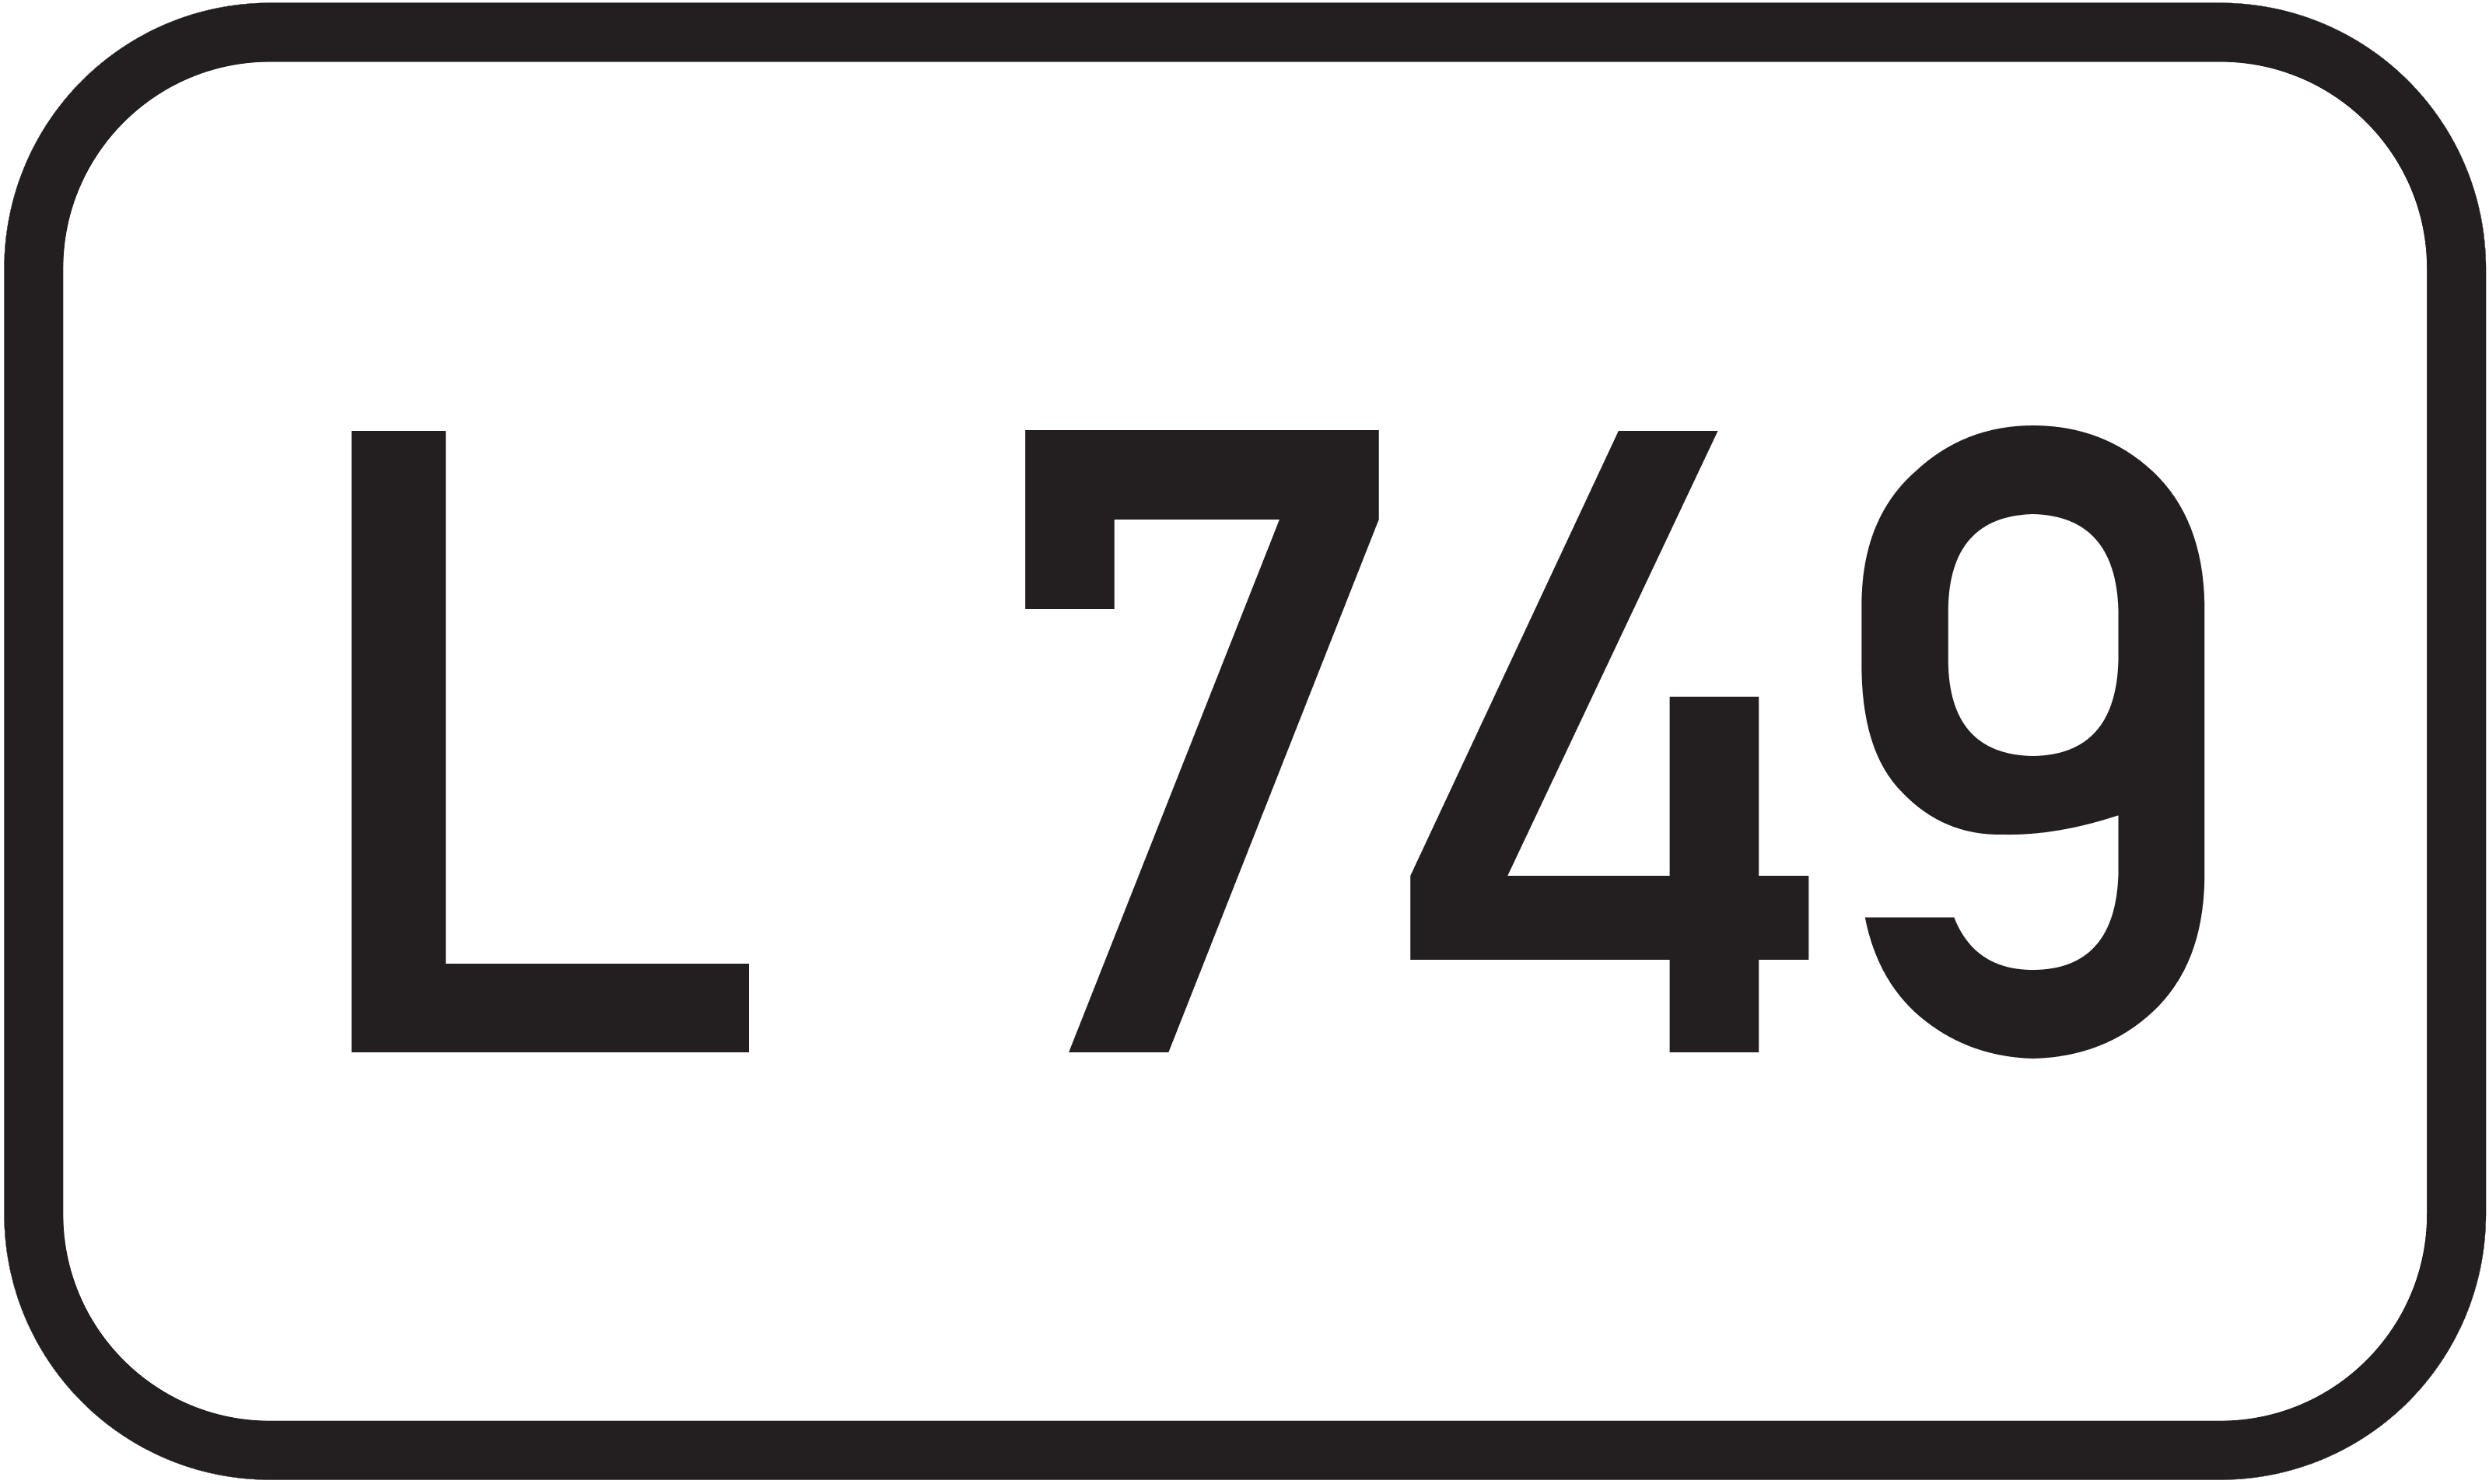 Landesstraße L 749